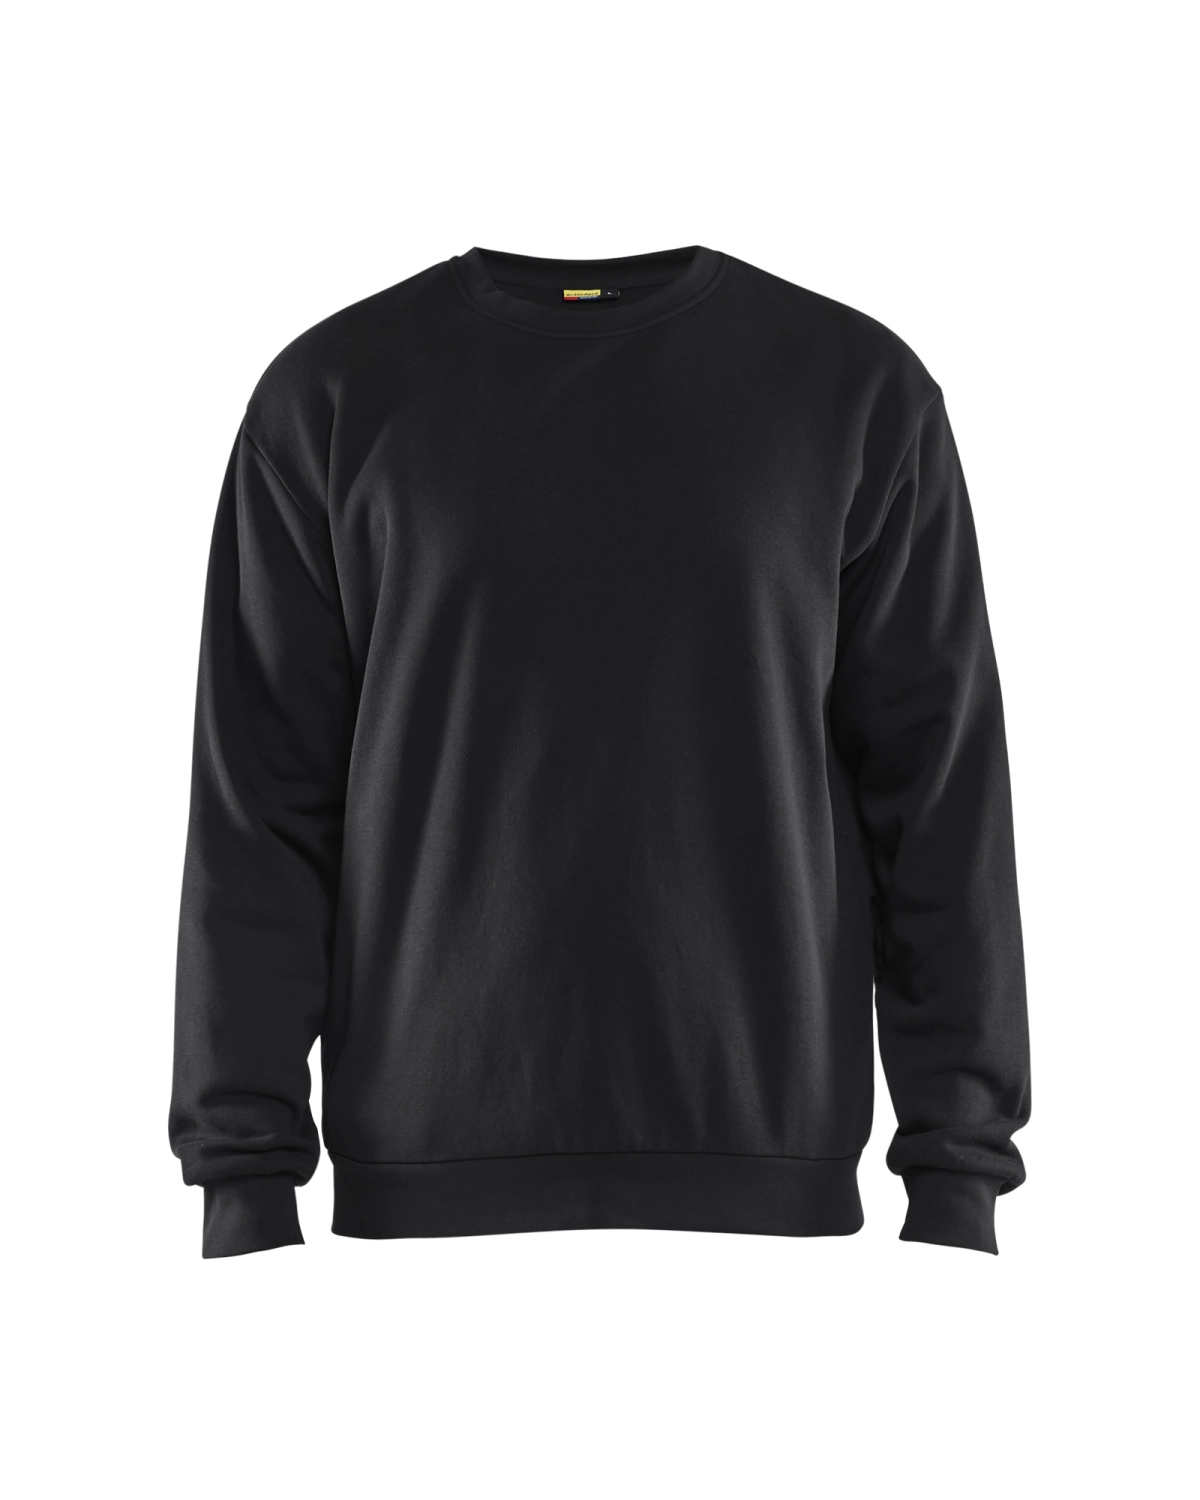 Blåkläder 3585 Sweatshirt - zwart - L